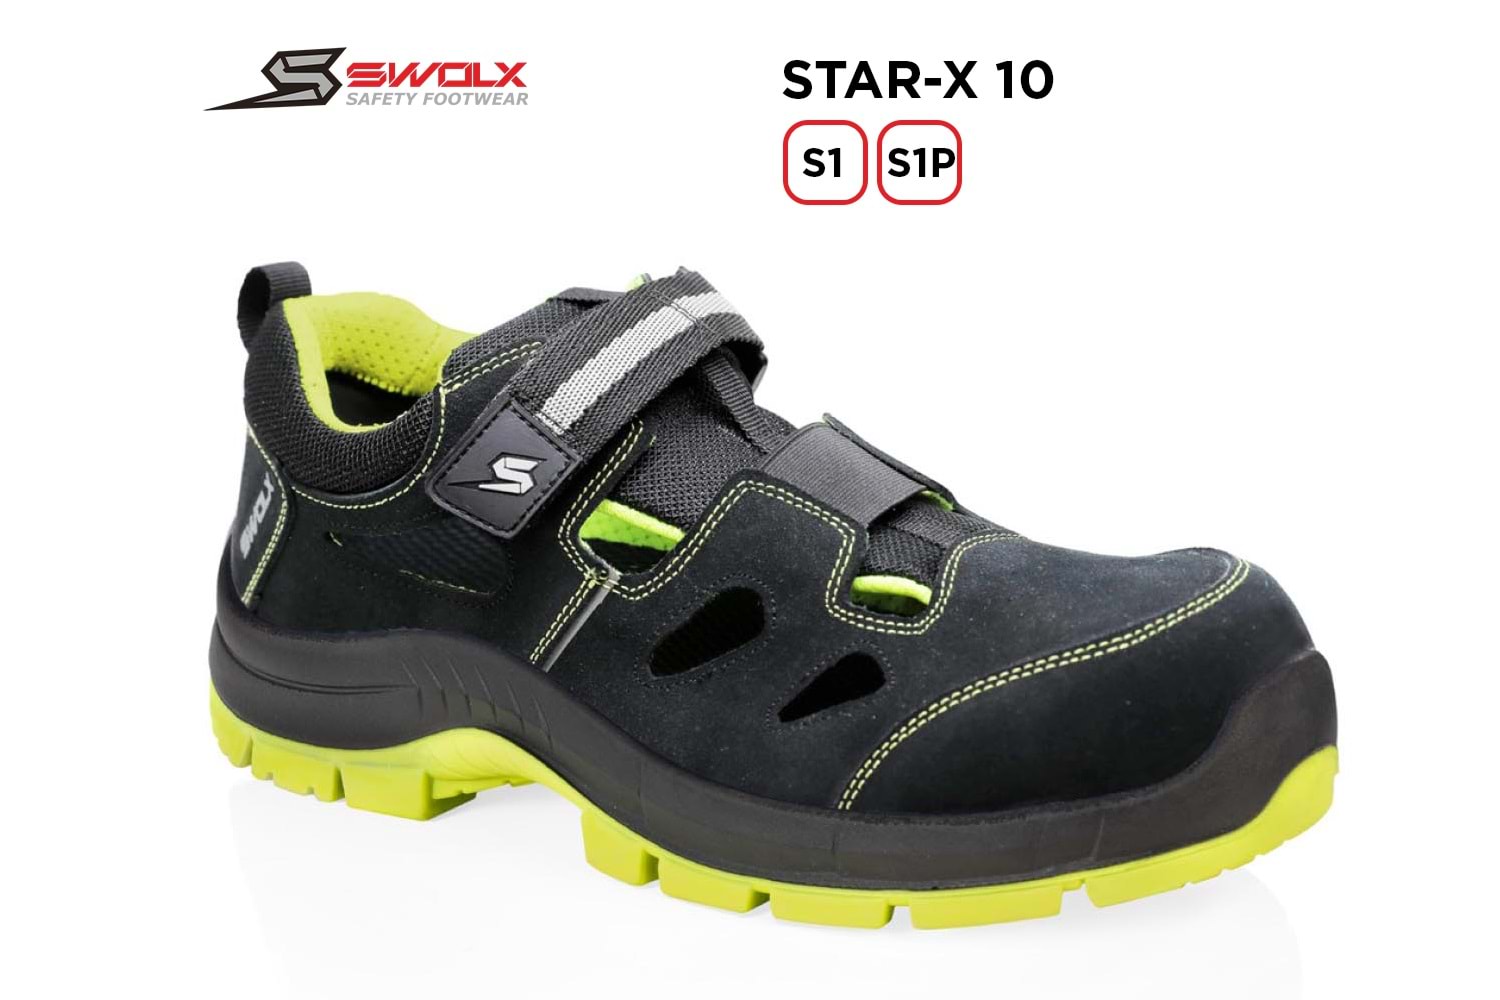 Swolx İş Ayakkabısı - Star-X 10 S1 - 39